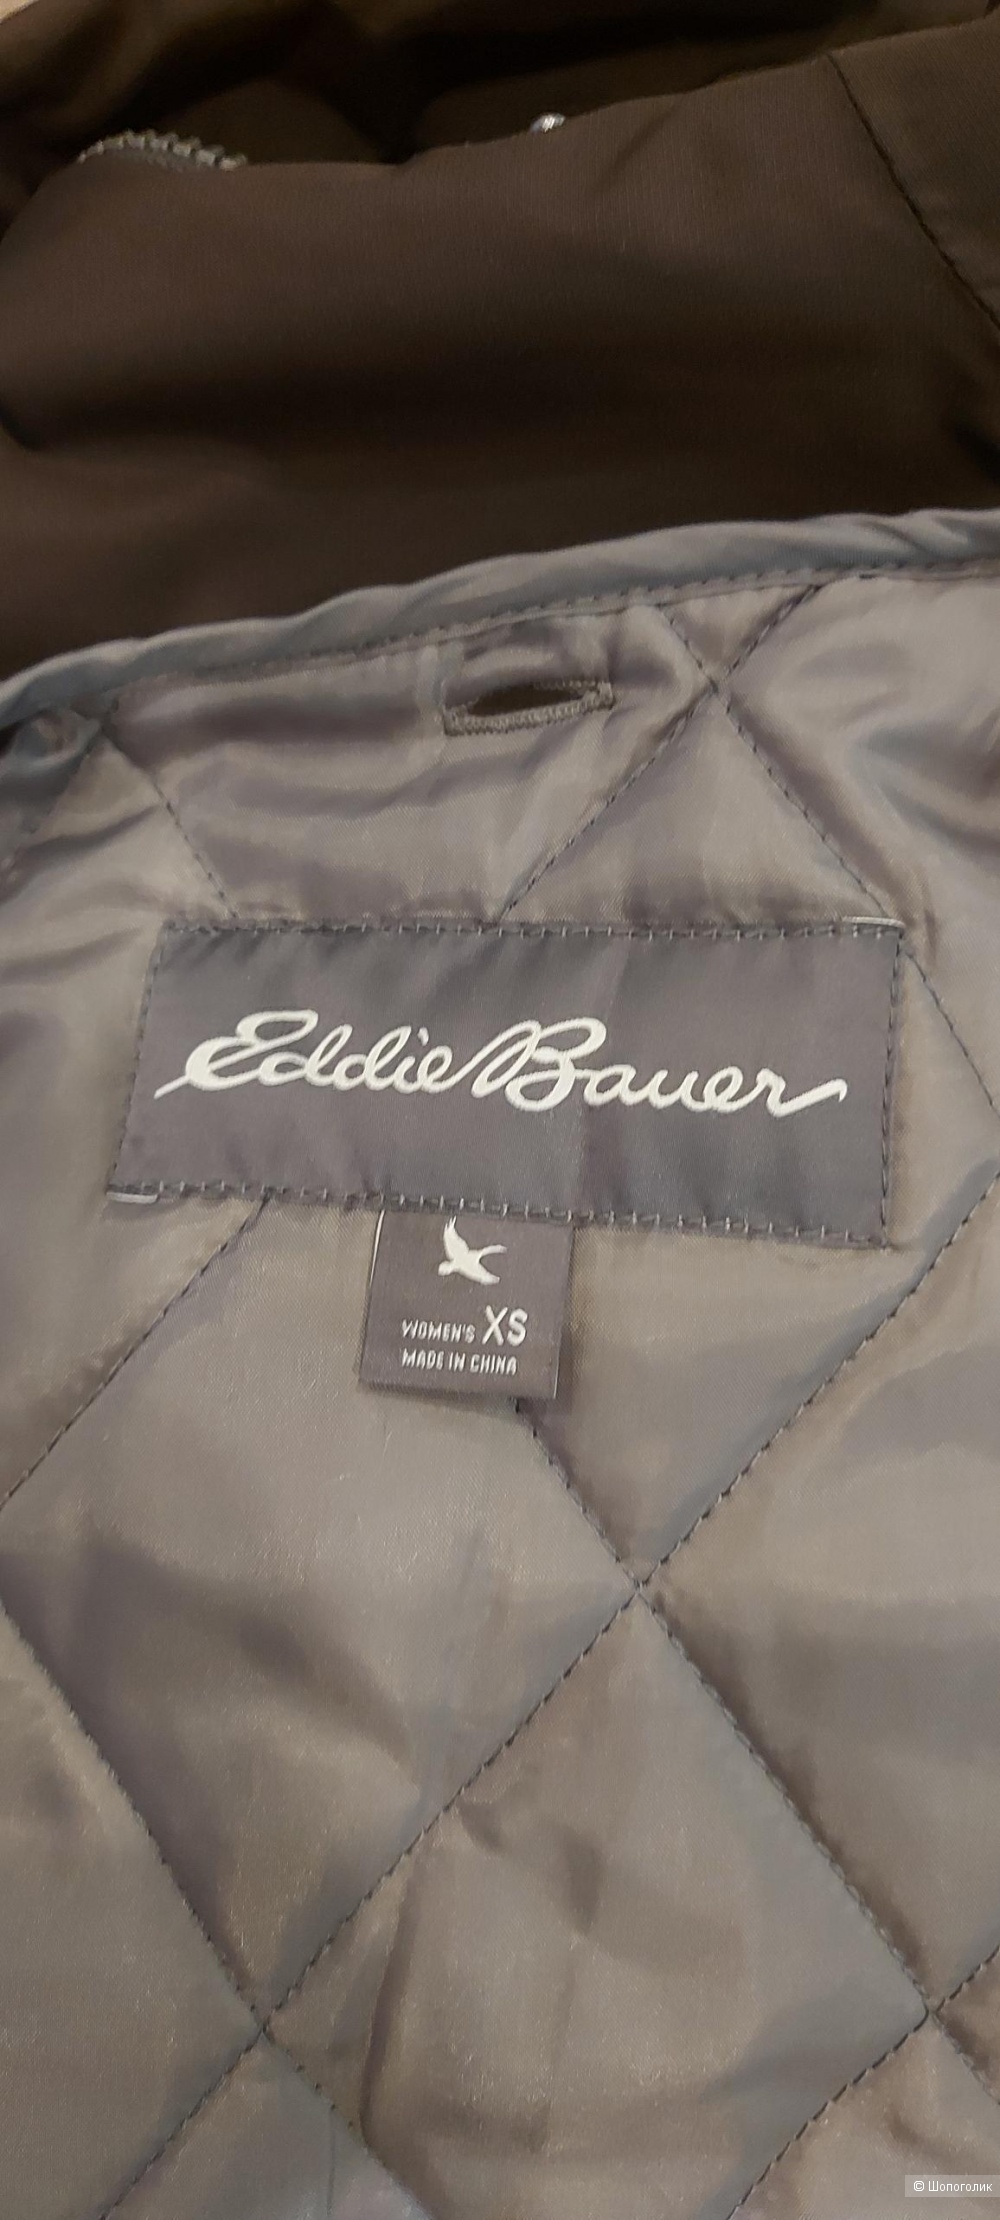 Куртка Eddie Bauer -XS на 42 русс